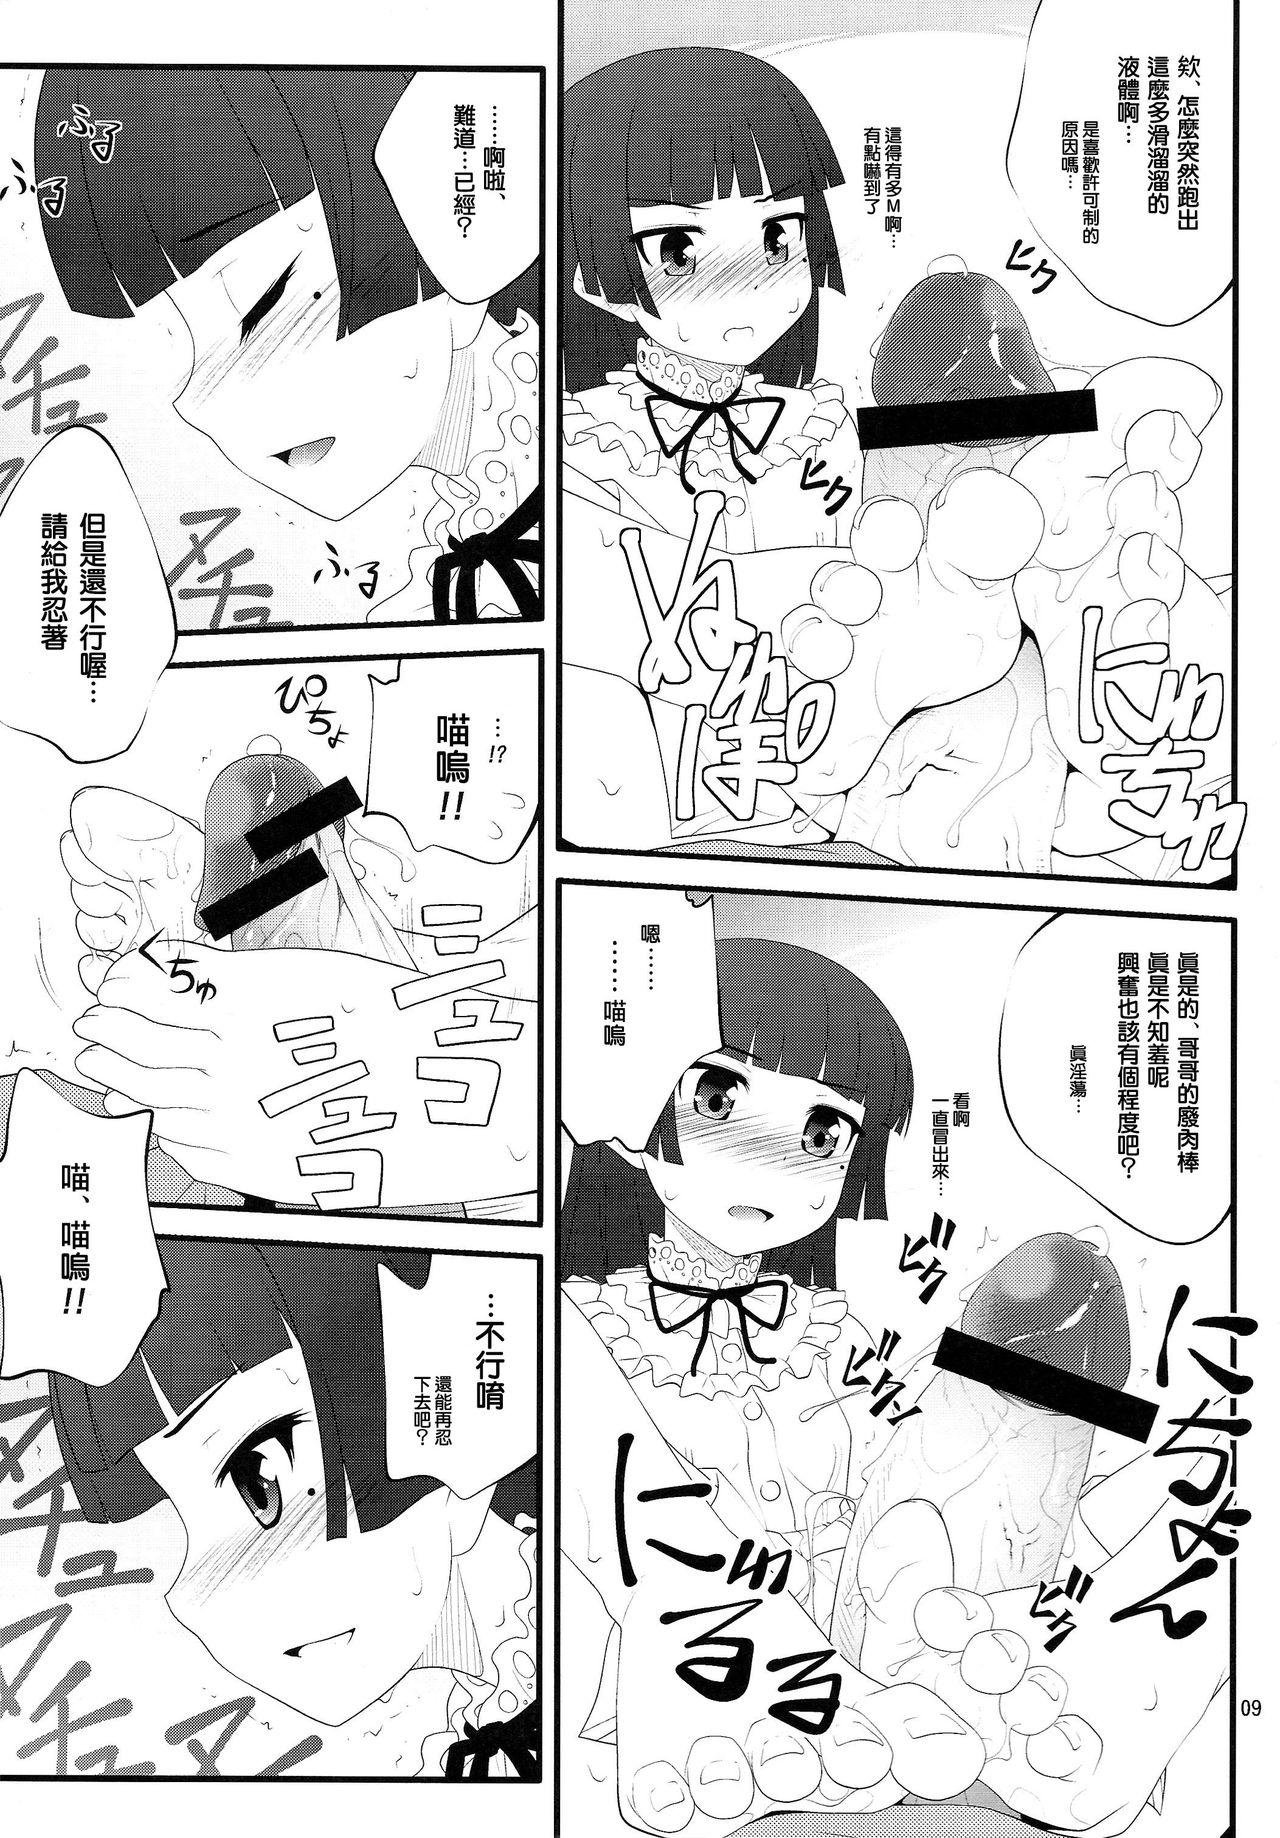 Rough Sex Nii-san, Ashi Monde Choudai After - Ore no imouto ga konna ni kawaii wake ga nai Parties - Page 9